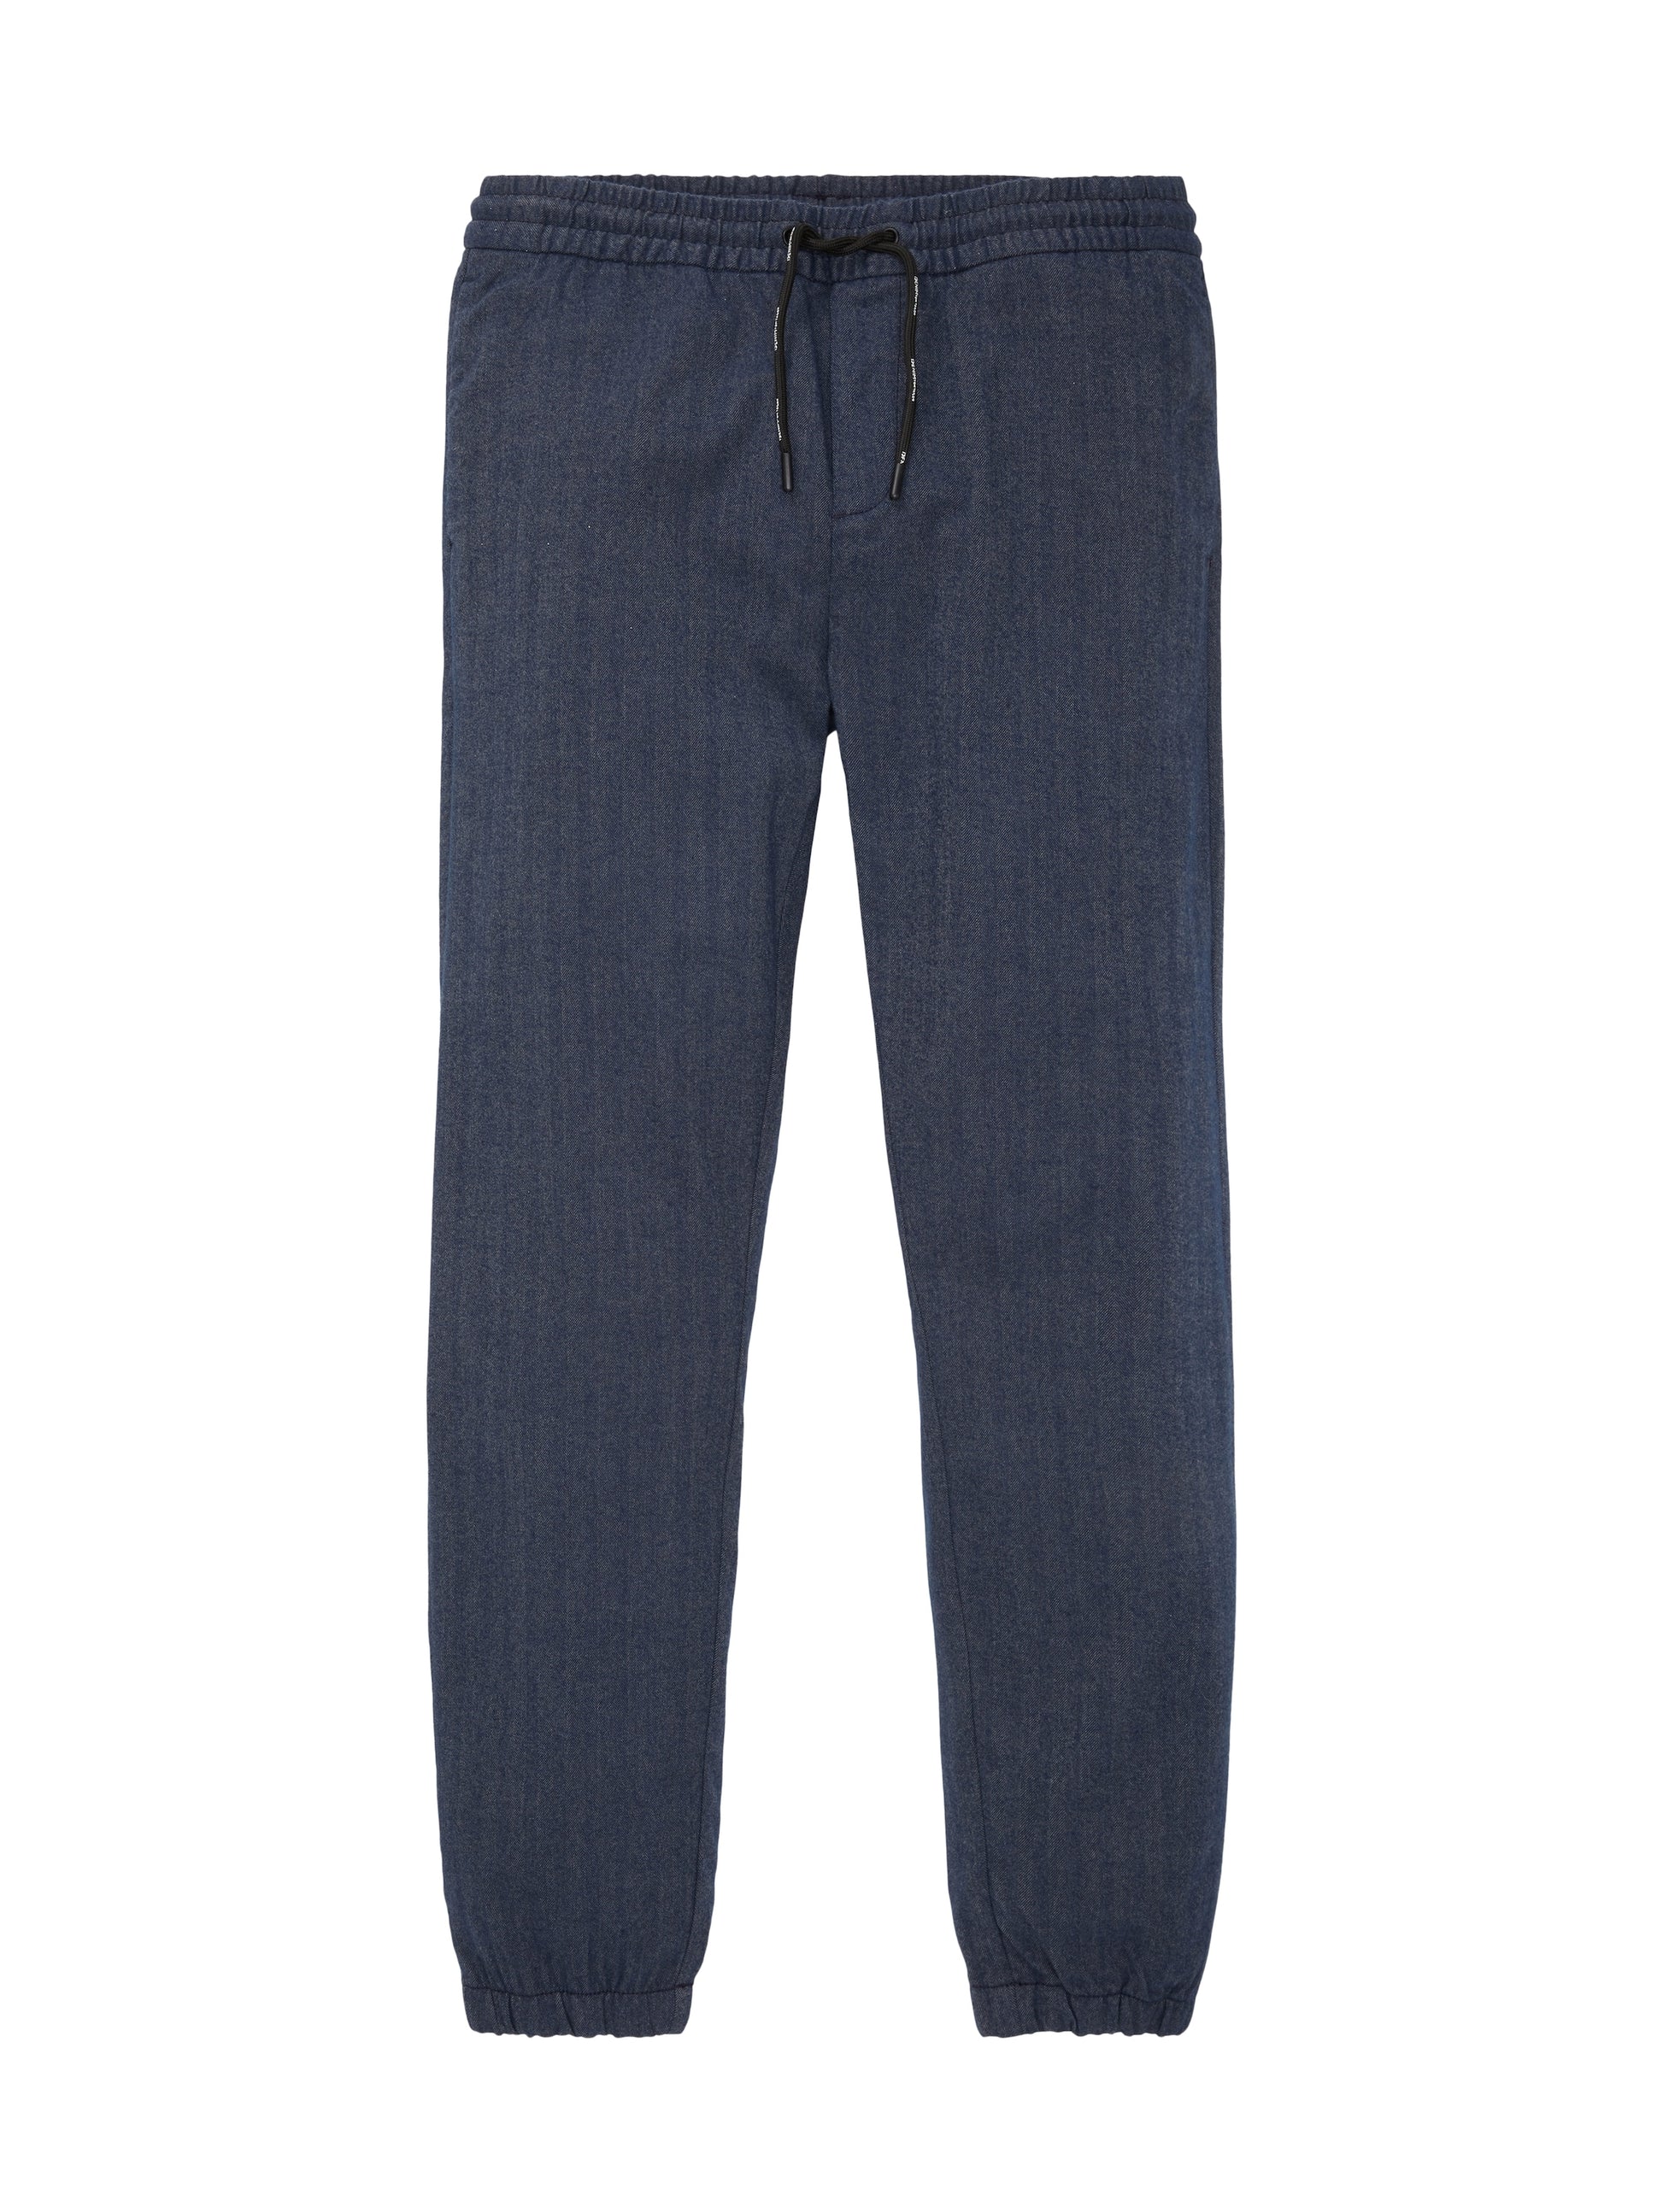 stretch comfort jogger pants (Navy Melange H)